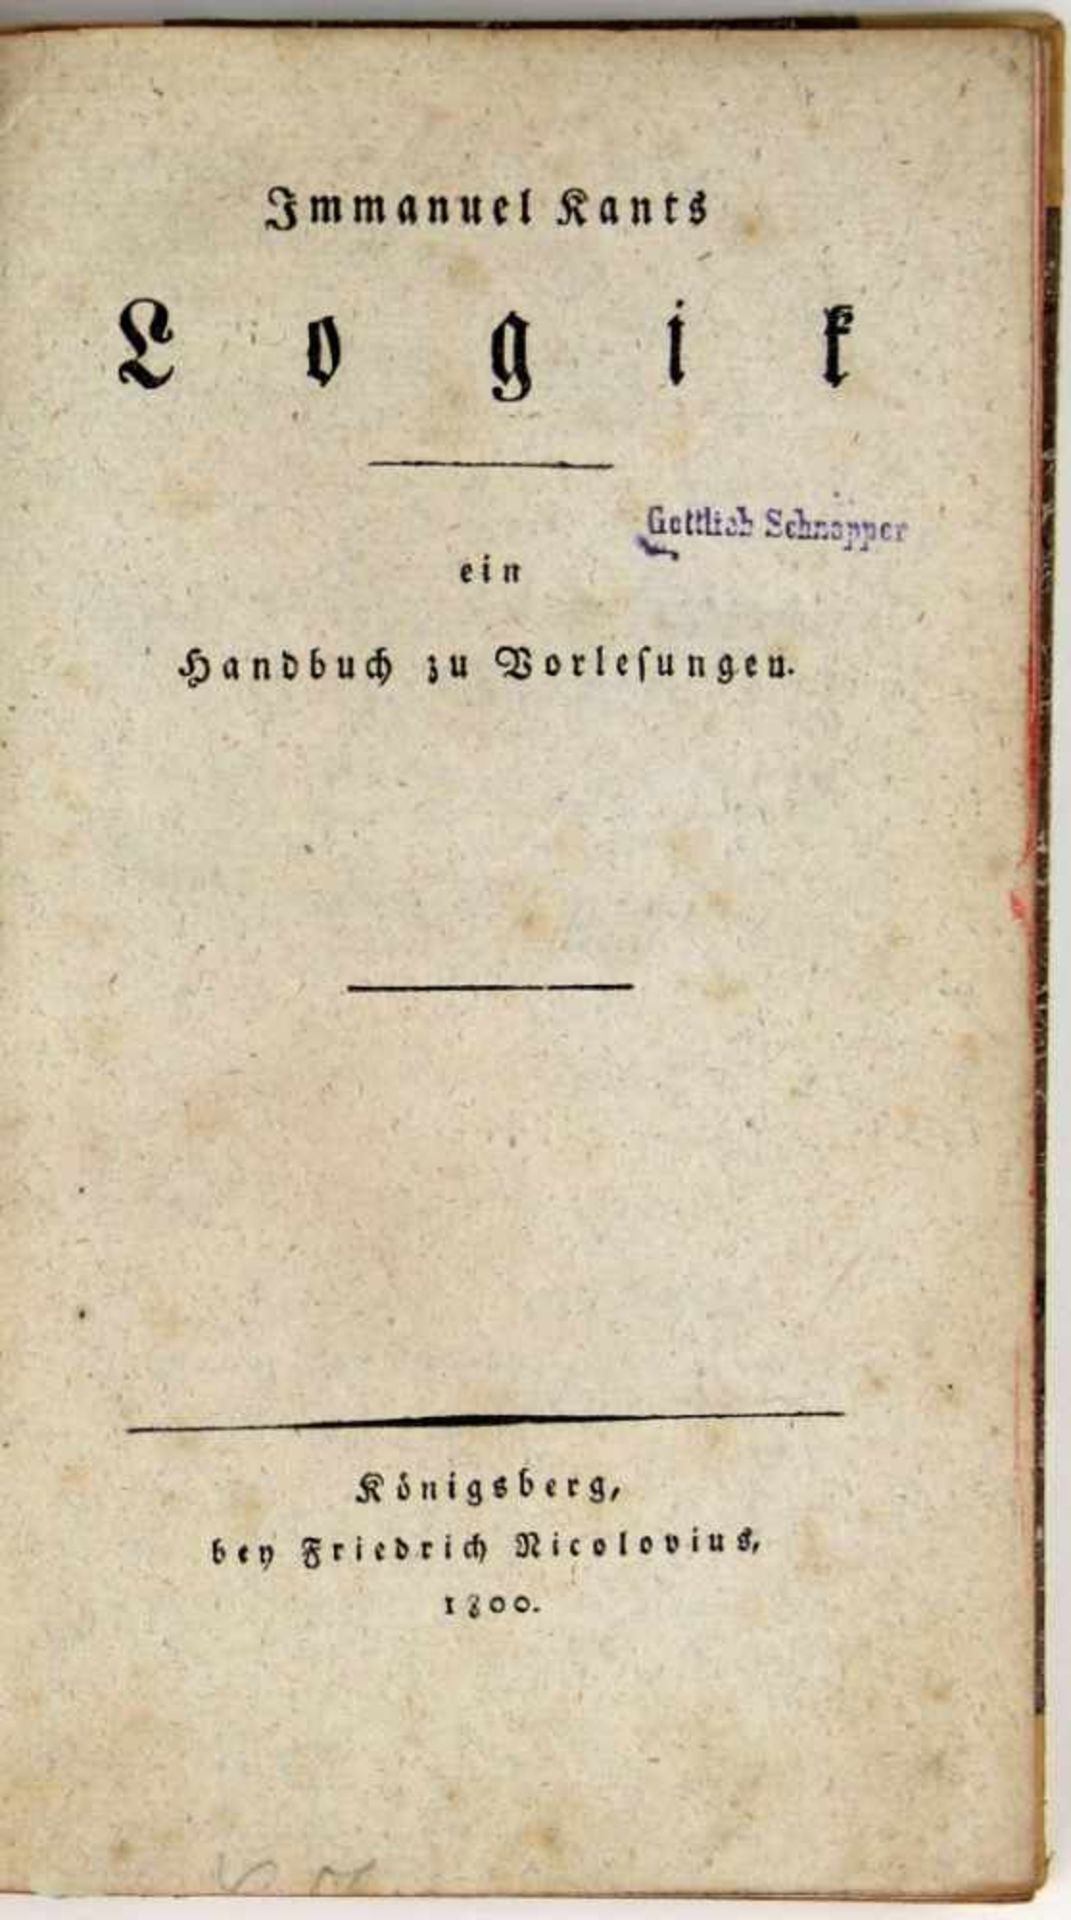 Kant, Immanuel:Logik, ein Handbuch zu Vorlesungen. (Herausgegeben von Gottlob Benjamin Jäsche).